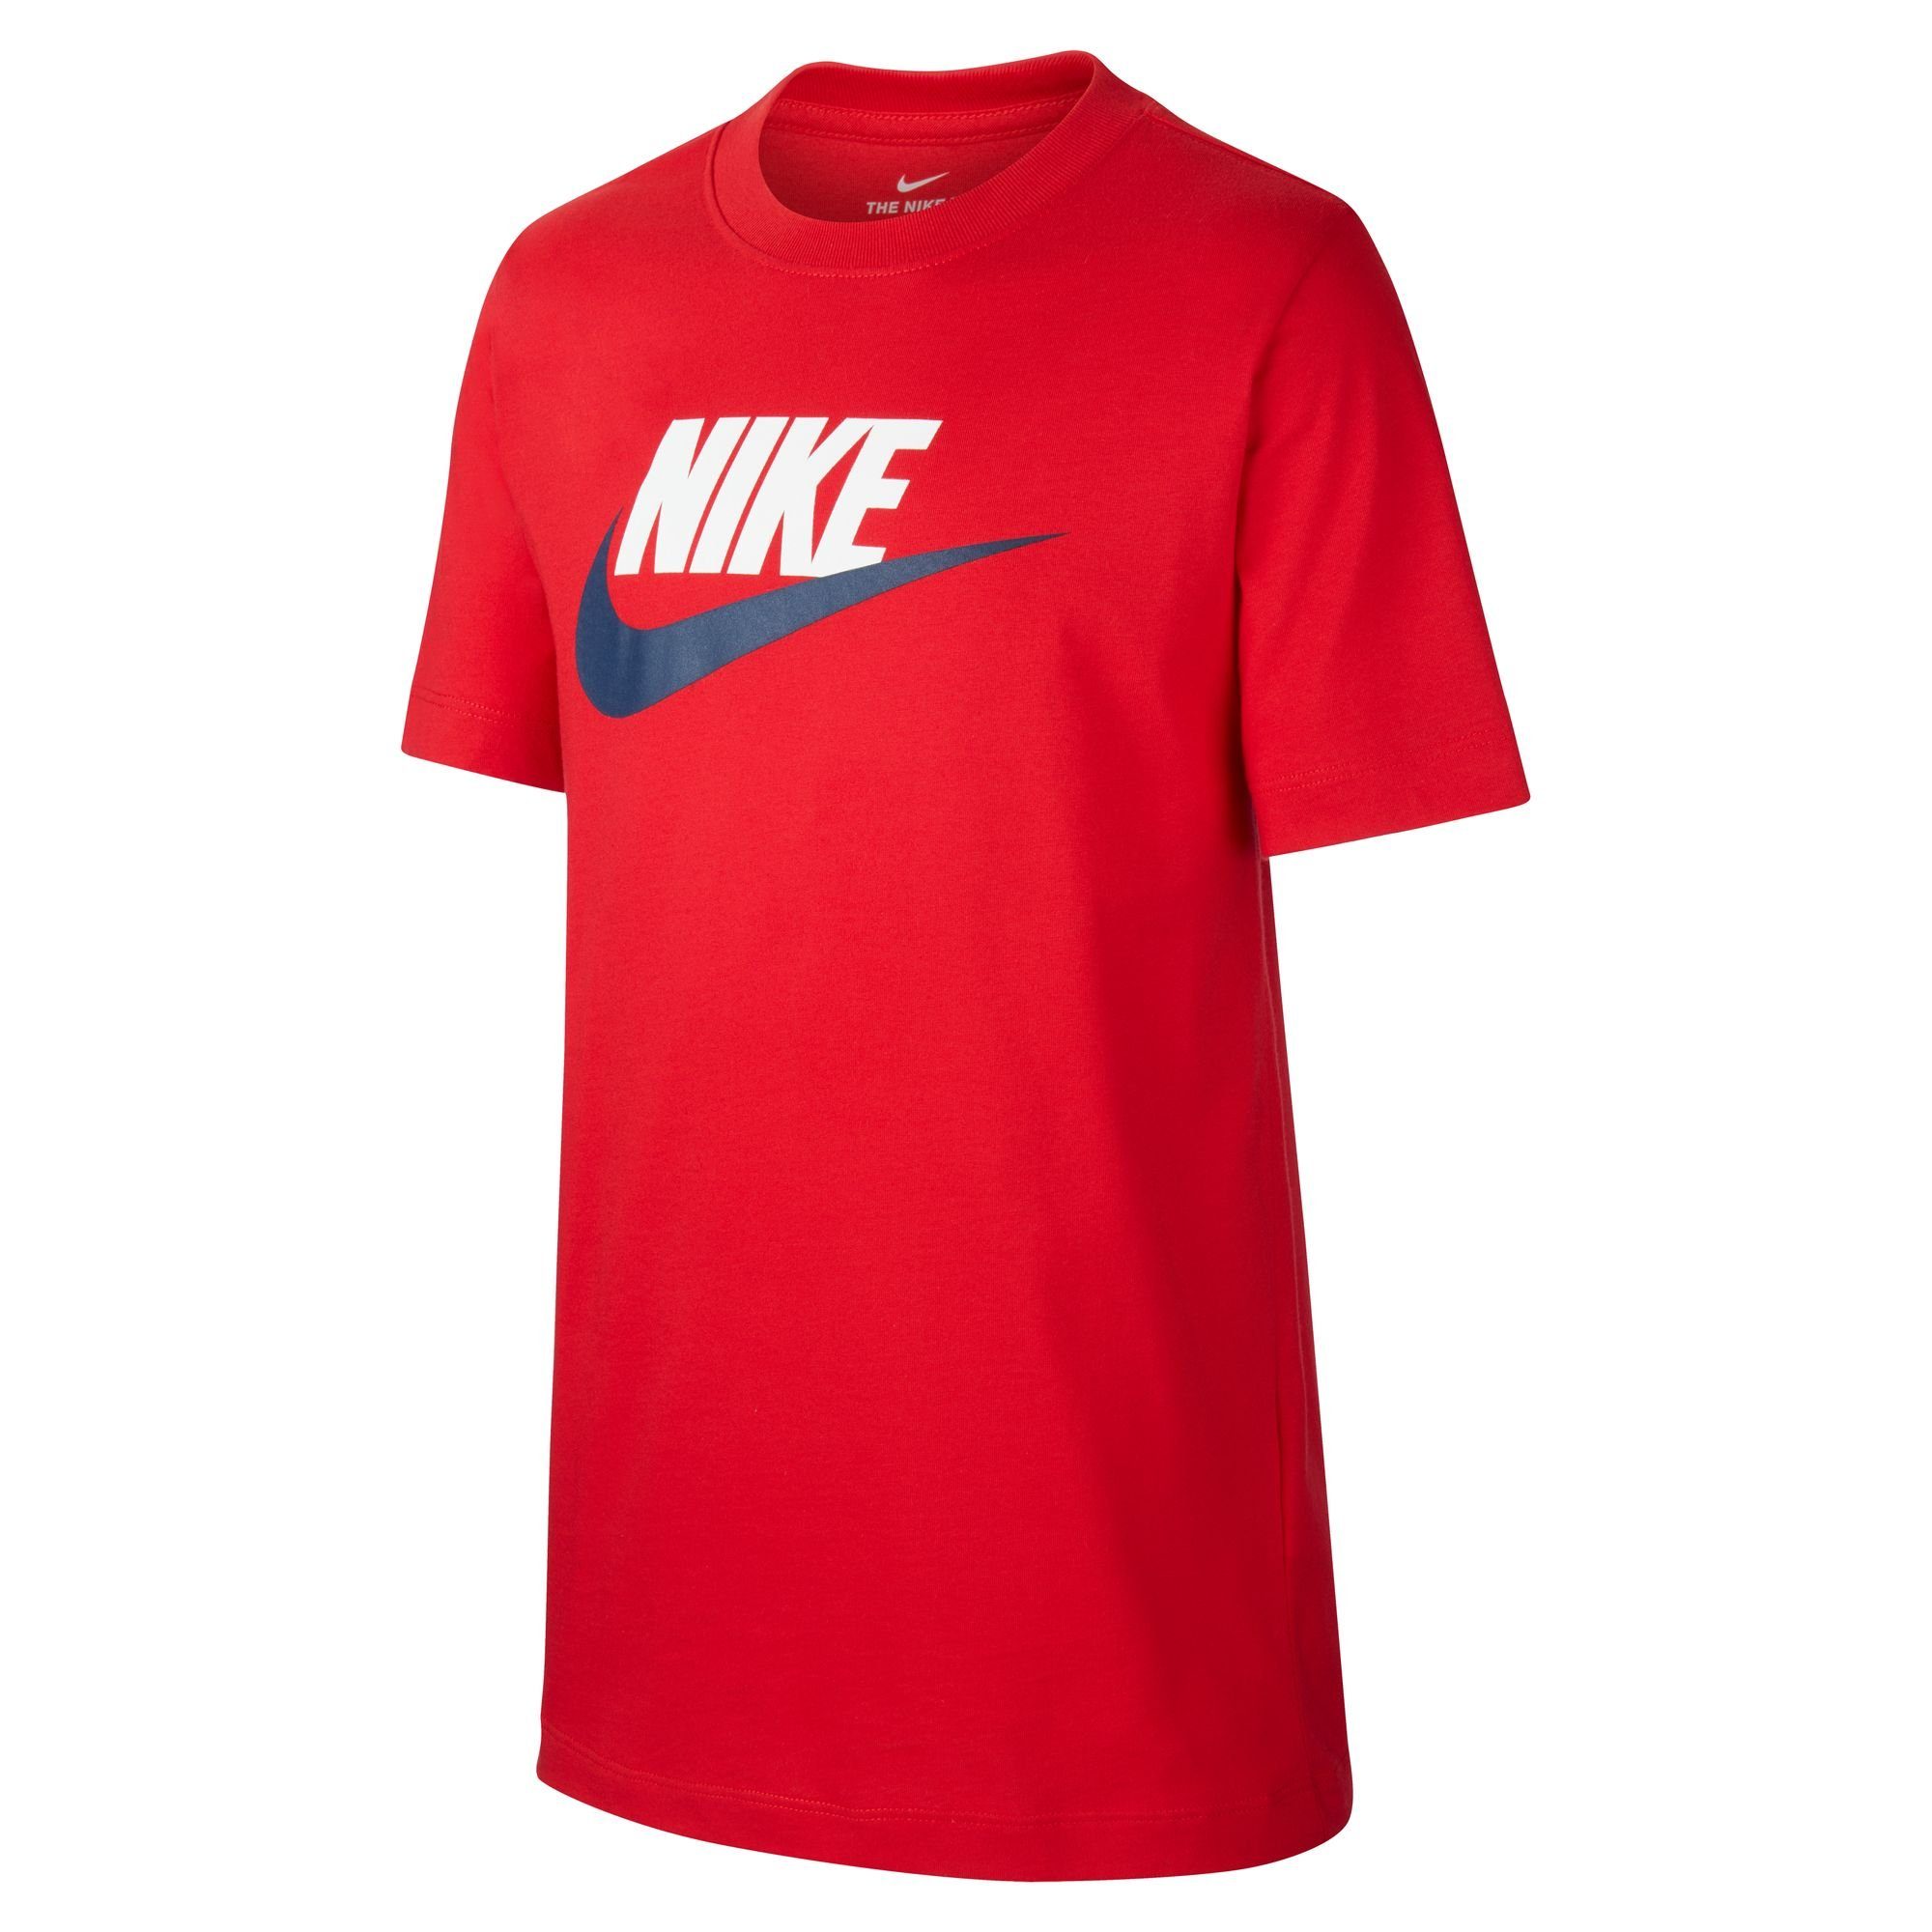 Nike T-SHIRT KIDS' BIG rot Sportswear T-Shirt COTTON